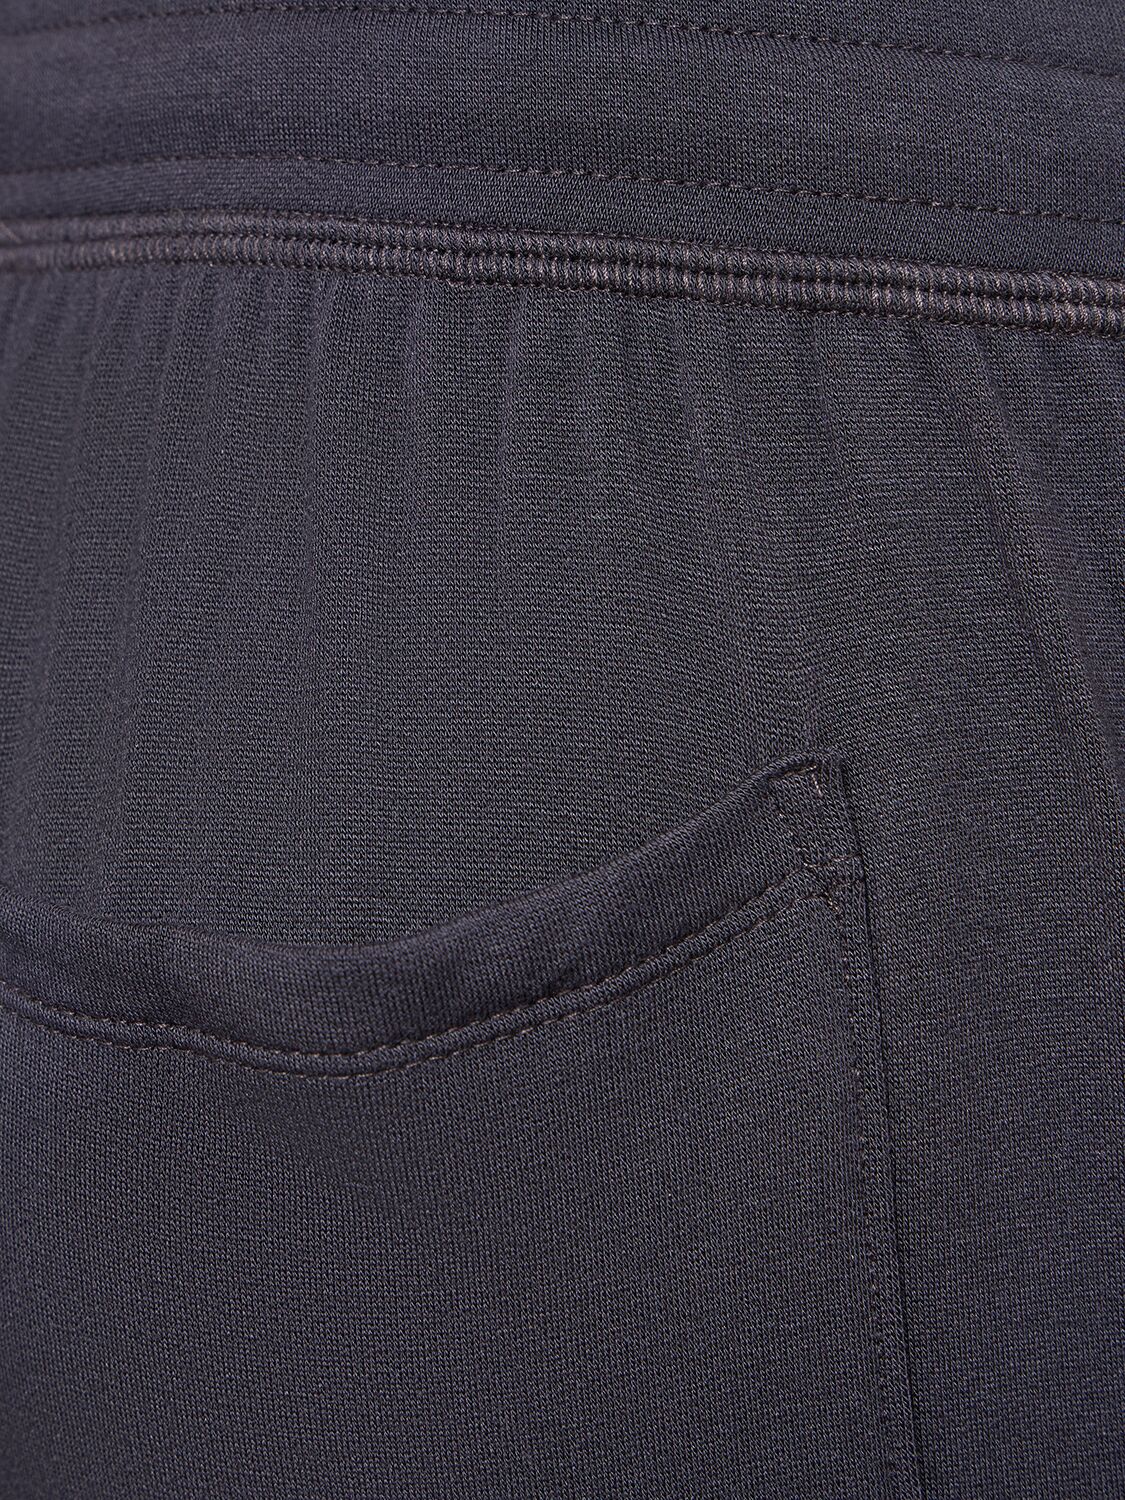 Shop Splits59 Reena Modal & Spandex 7/8 Sweatpants In Black